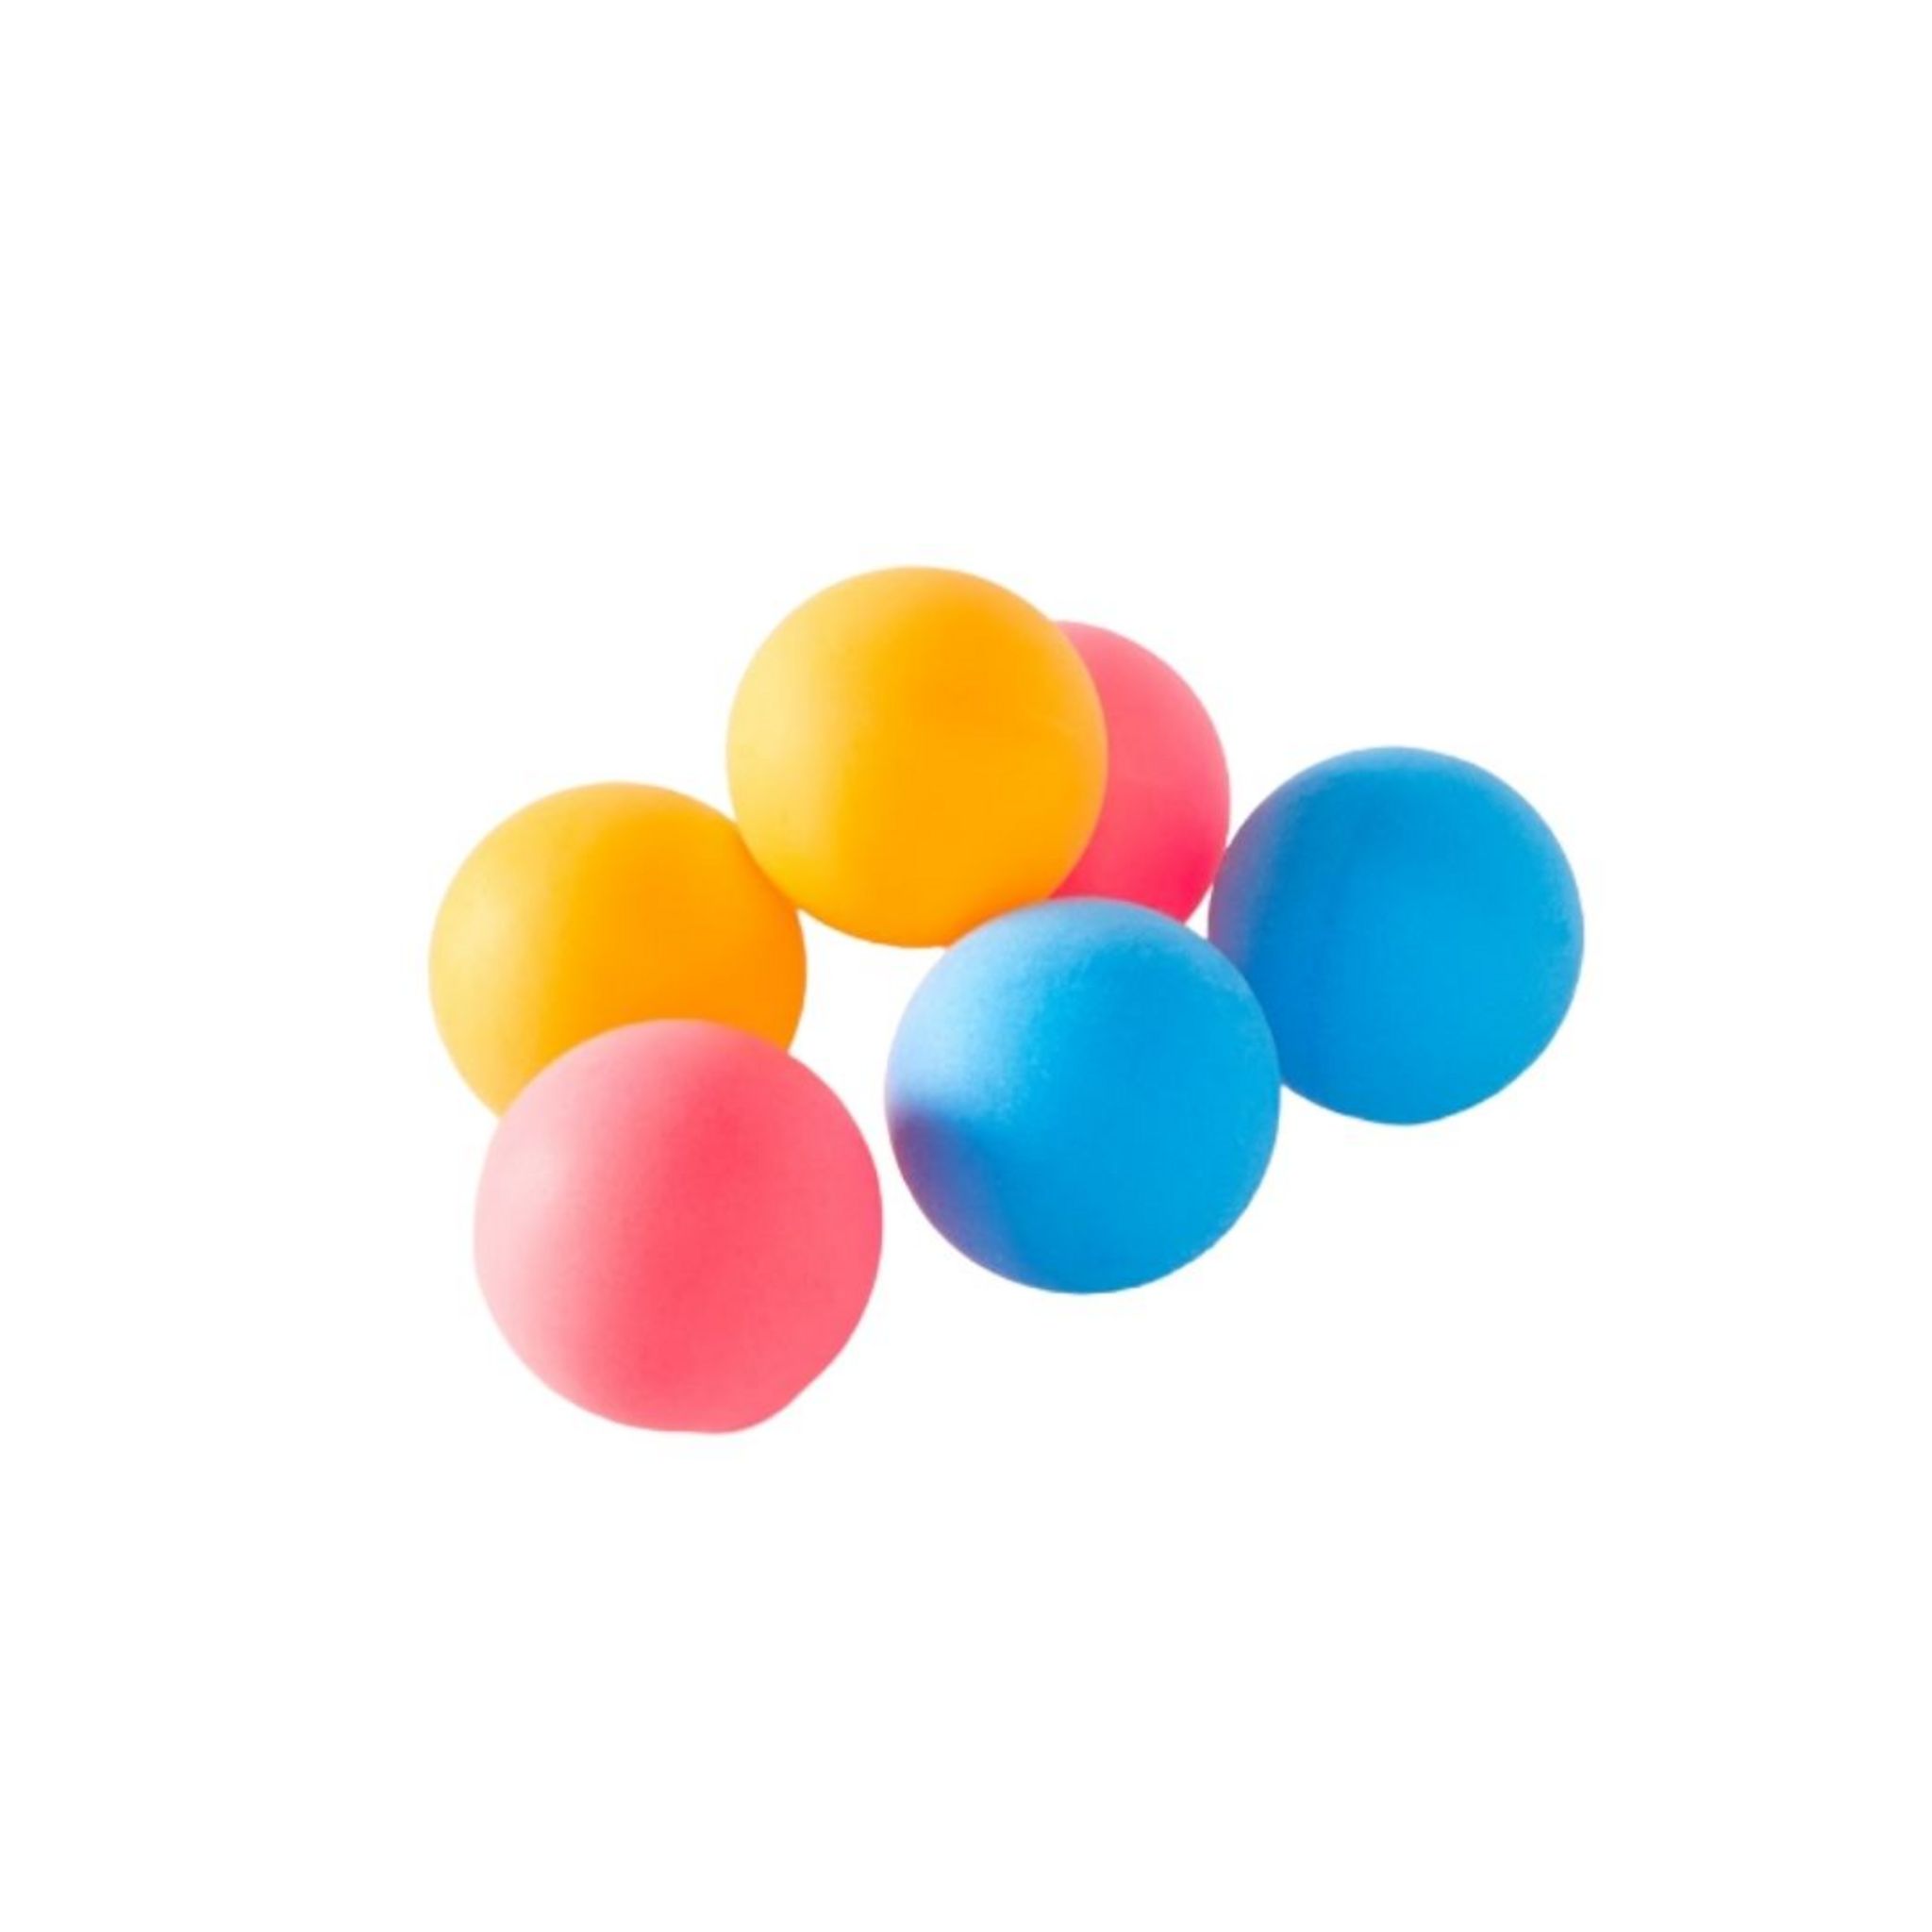 Des balles de Ping Pong de deux couleurs arrivent – Principal – Le